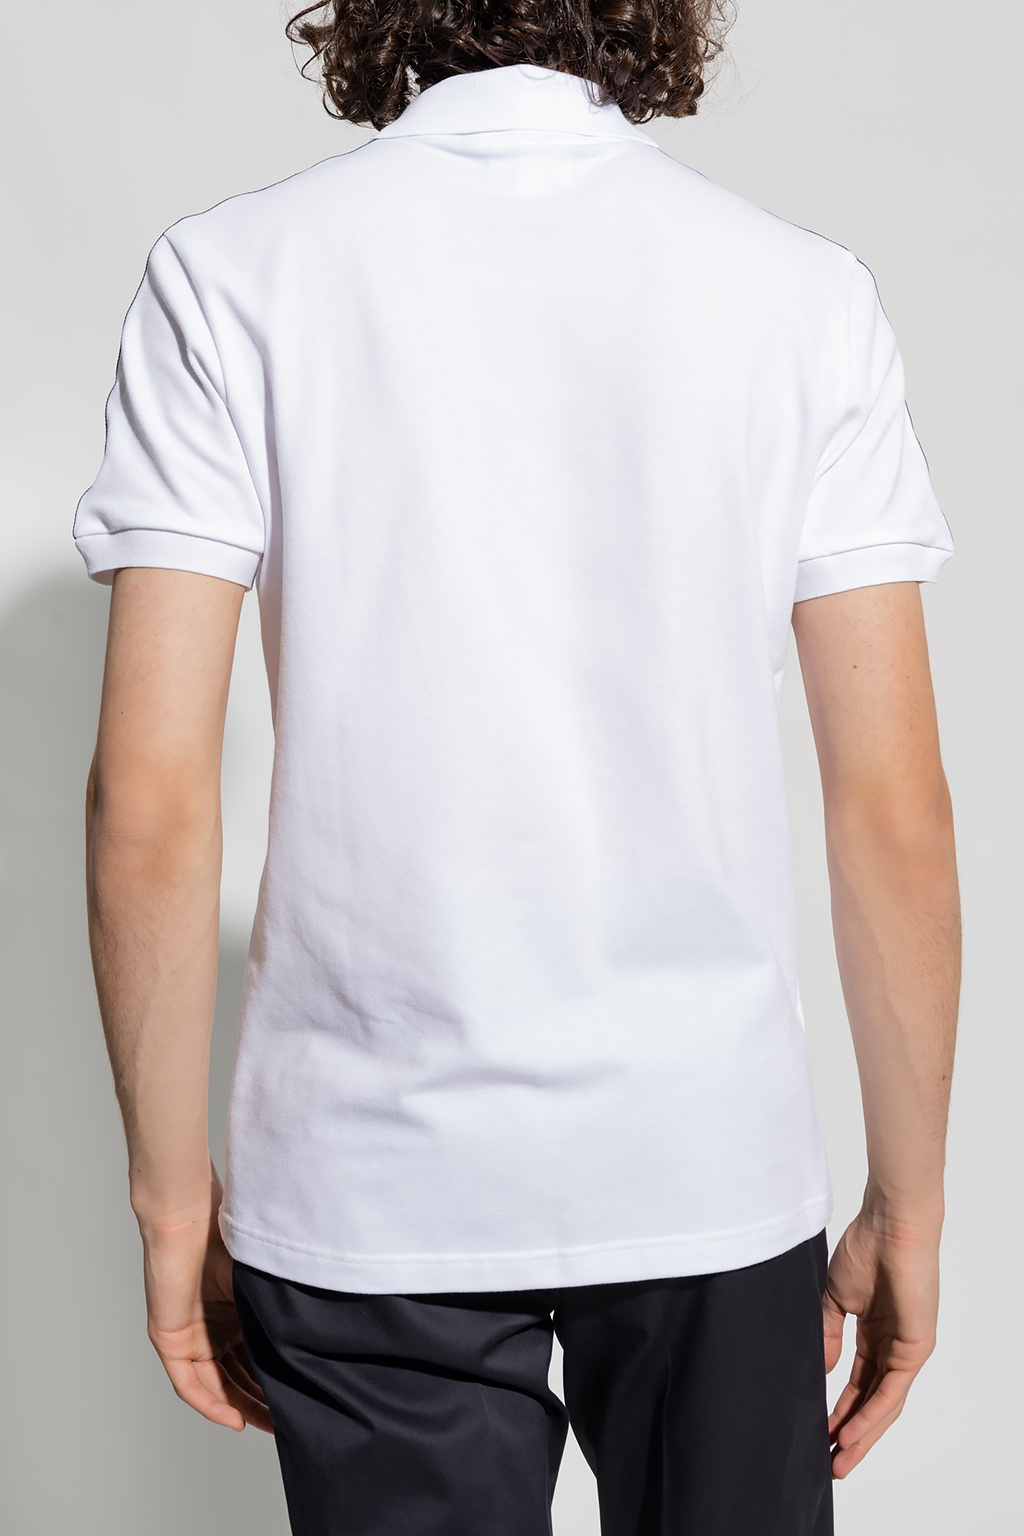 Lacoste polo felix shirt with logo